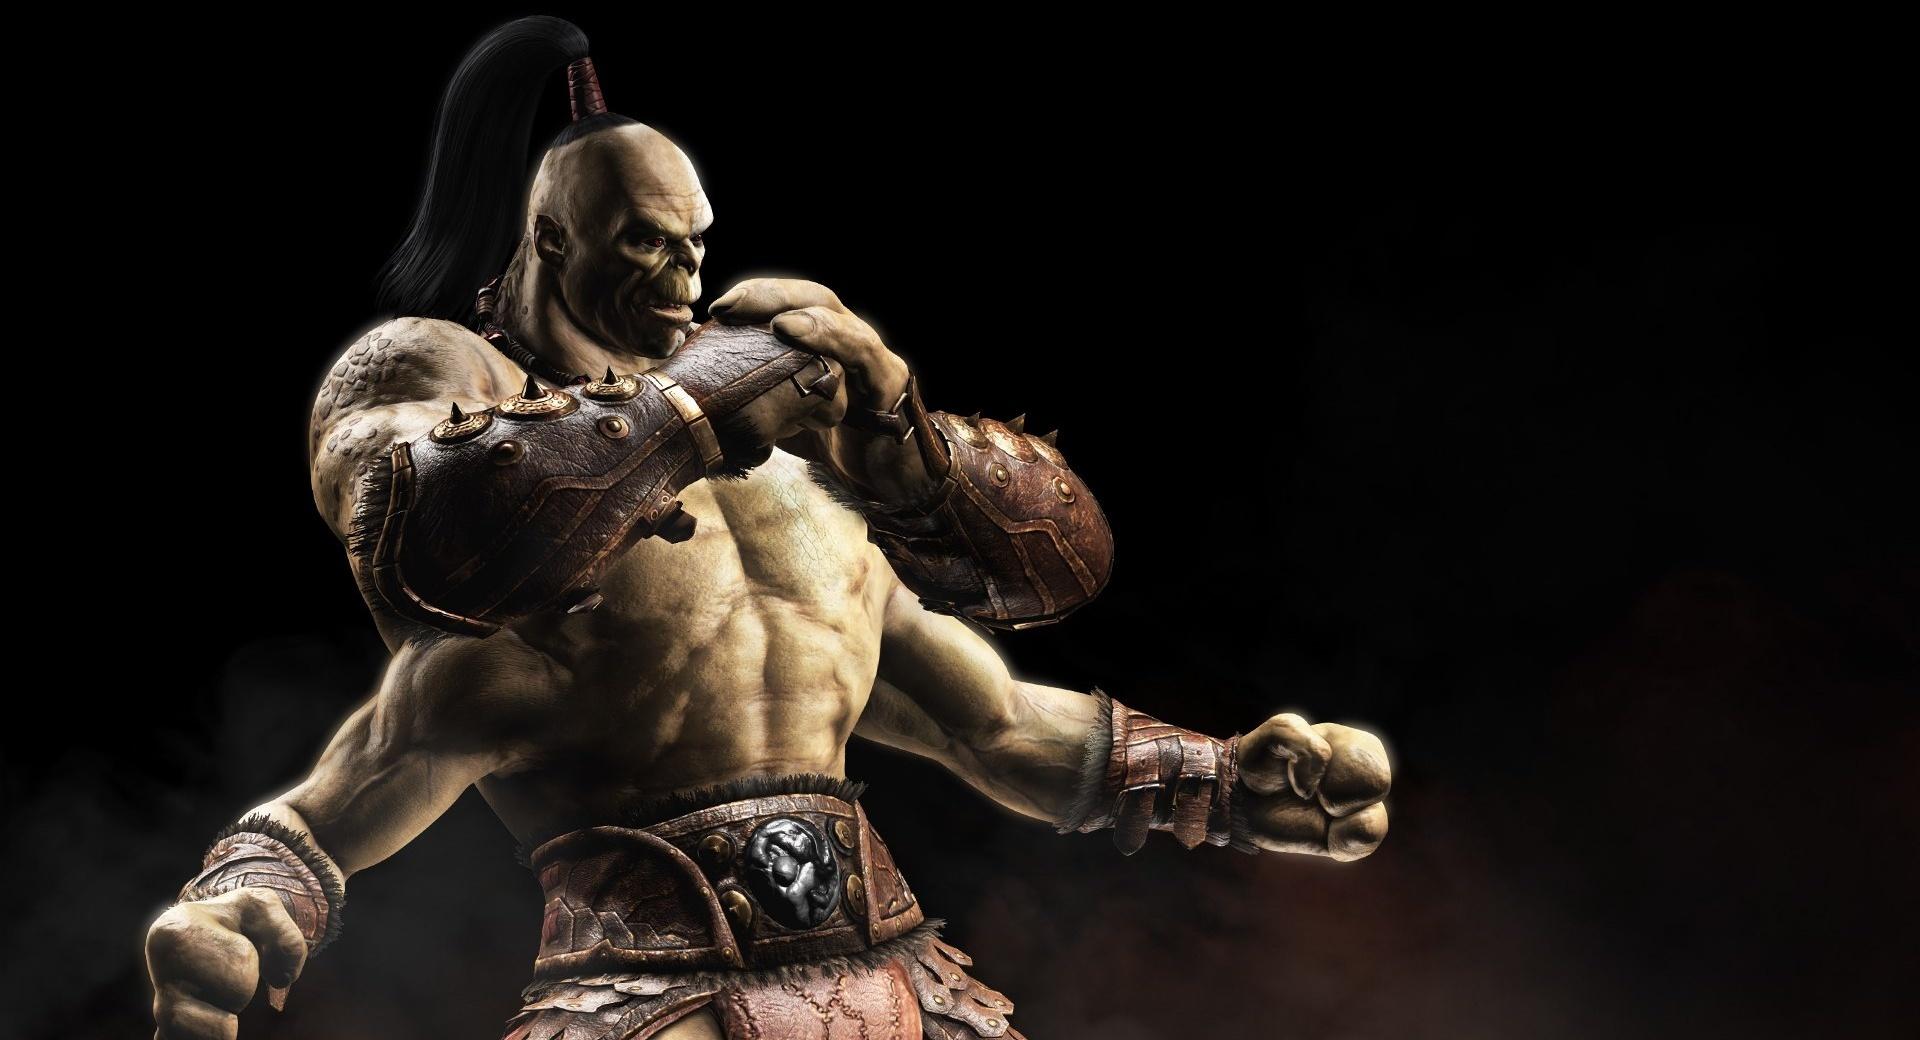 Goro - Mortal Kombat X at 2048 x 2048 iPad size wallpapers HD quality